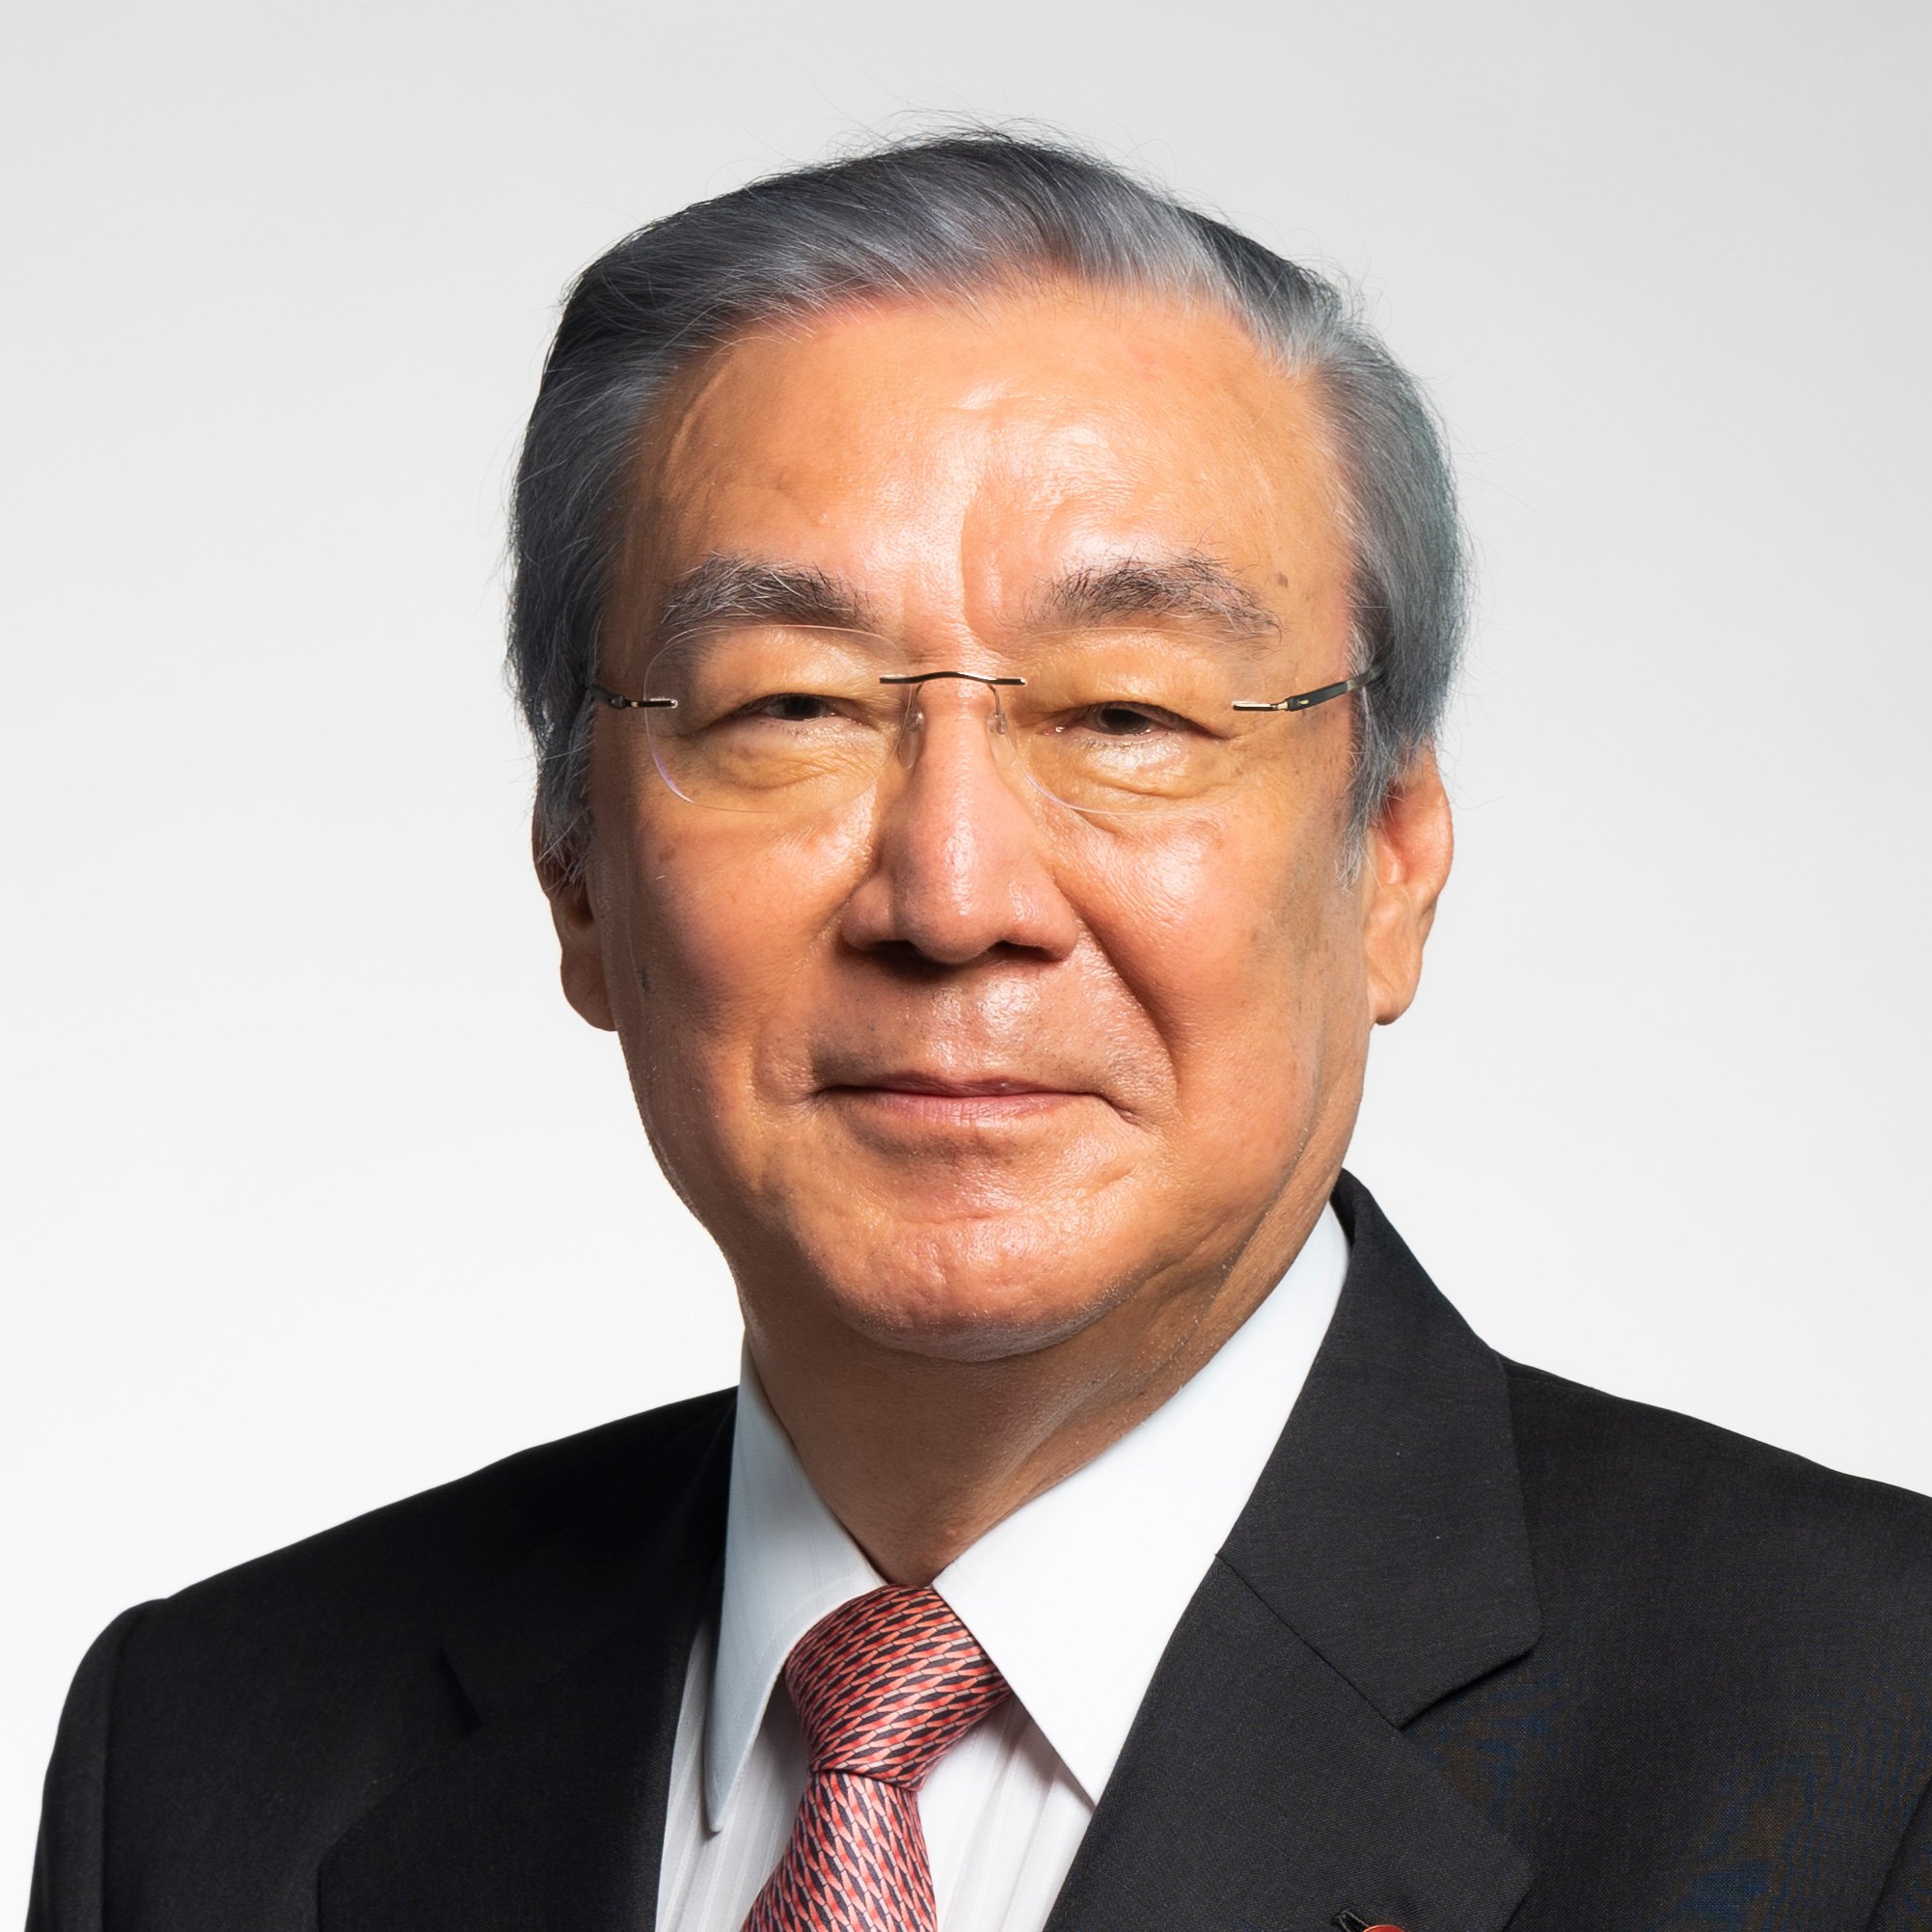 Tsunehiro Nakayama